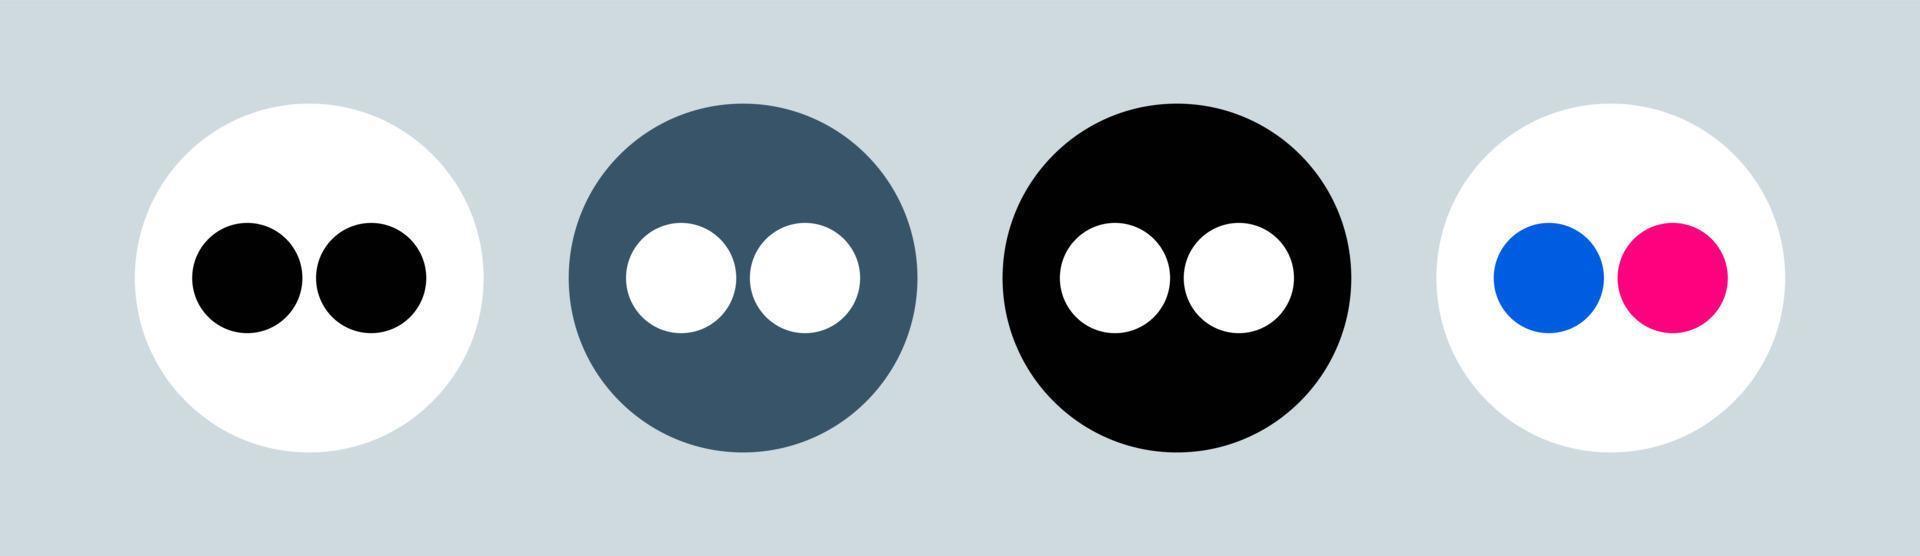 logo flickr in cerchio. illustrazione vettoriale del logotipo della rete sociale popolare.